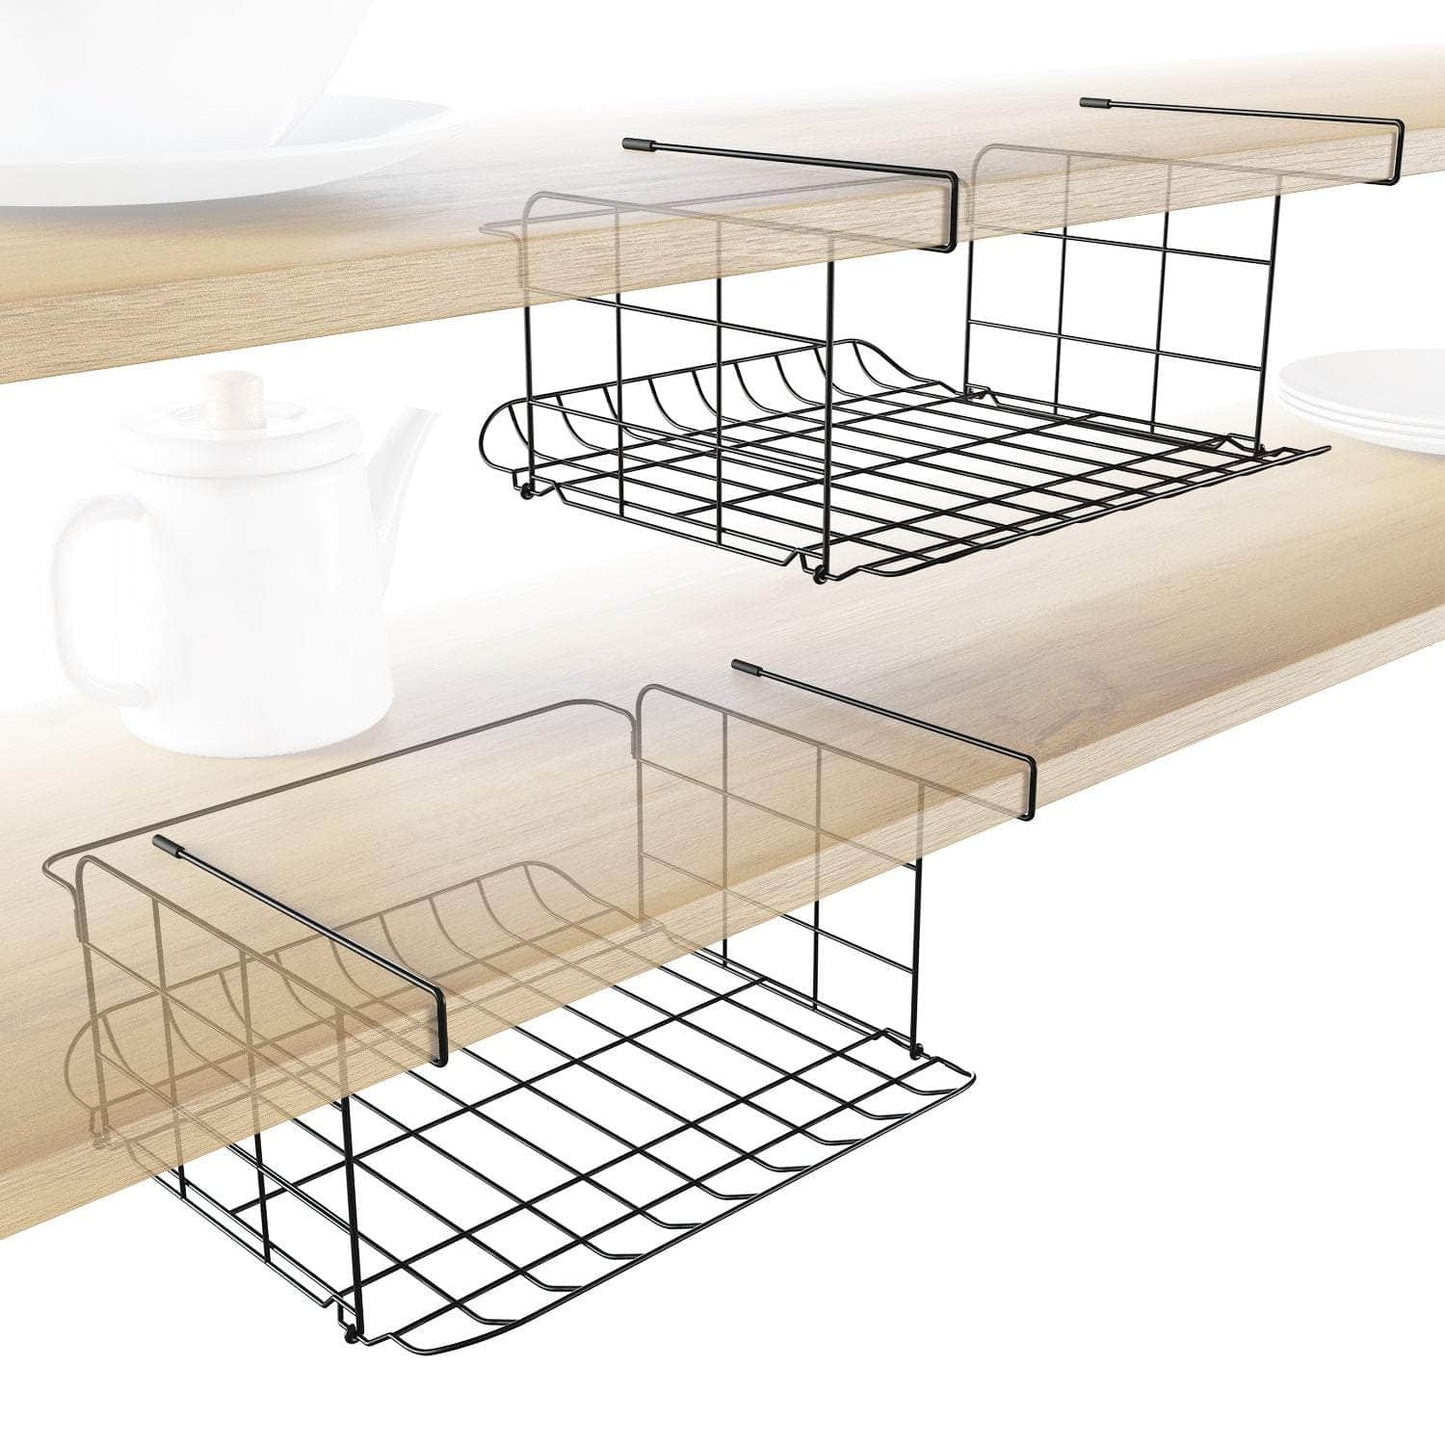 KD Essentials – 2× under-shelf storage baskets, set of two, grid design